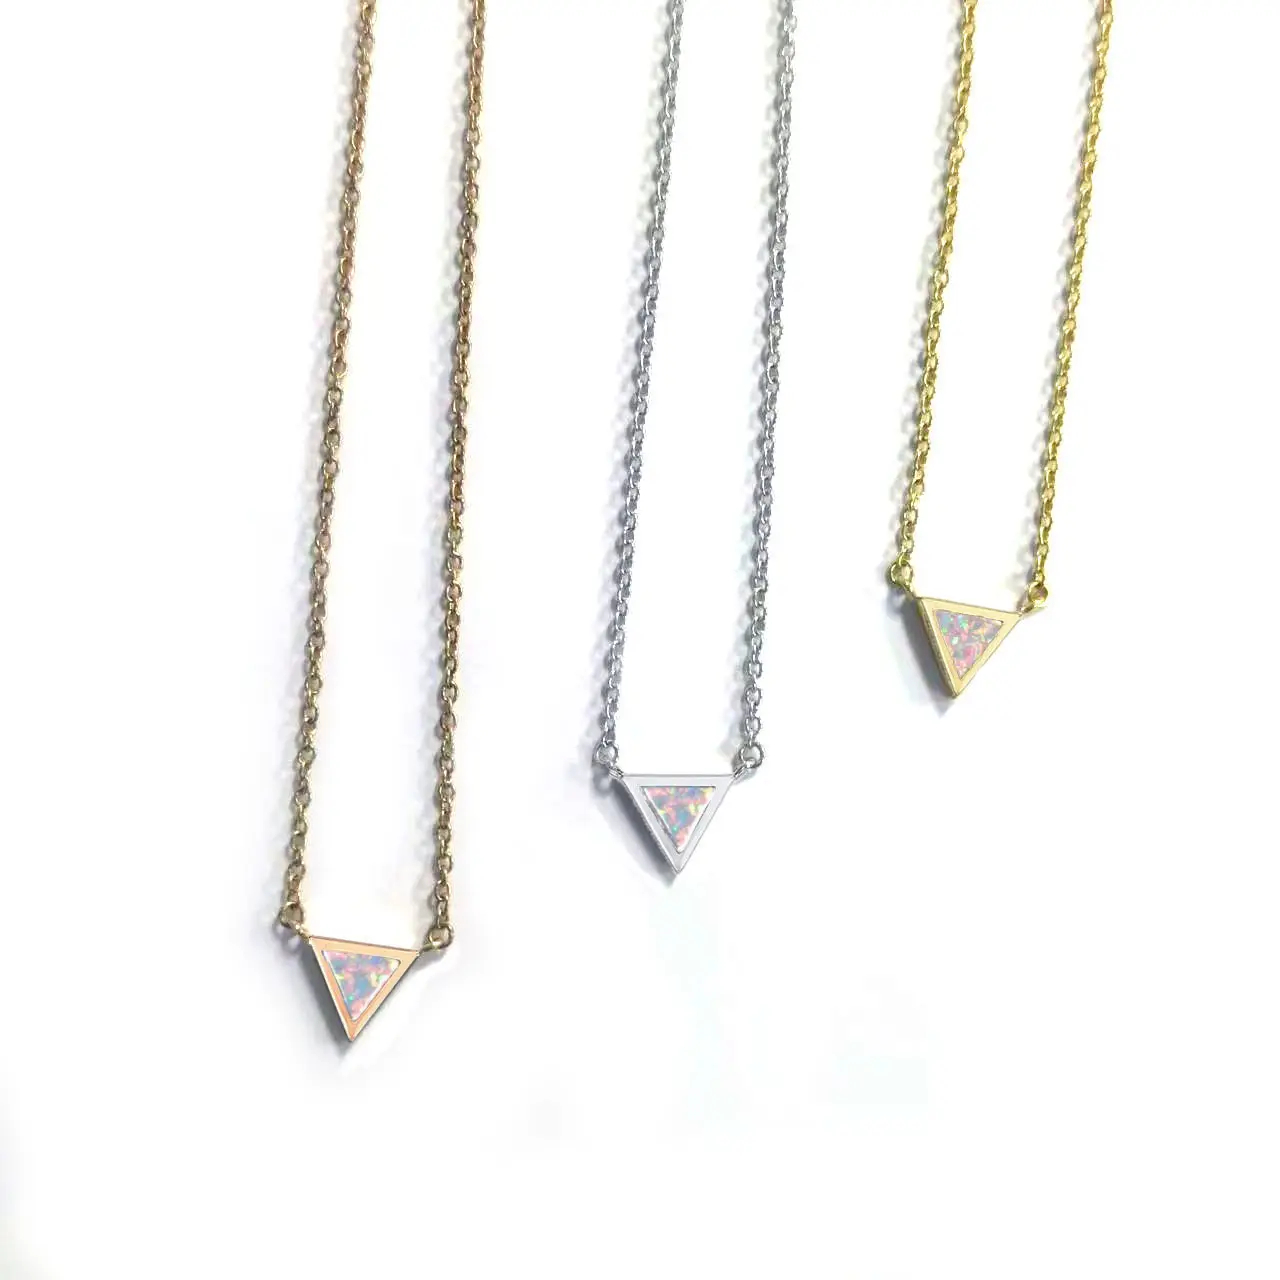 Nufrench fransız tarzı Trendy altın gümüş paslanmaz çelik Charm takı Minimalist zarif Opal kakma üçgen gerdanlık kolye